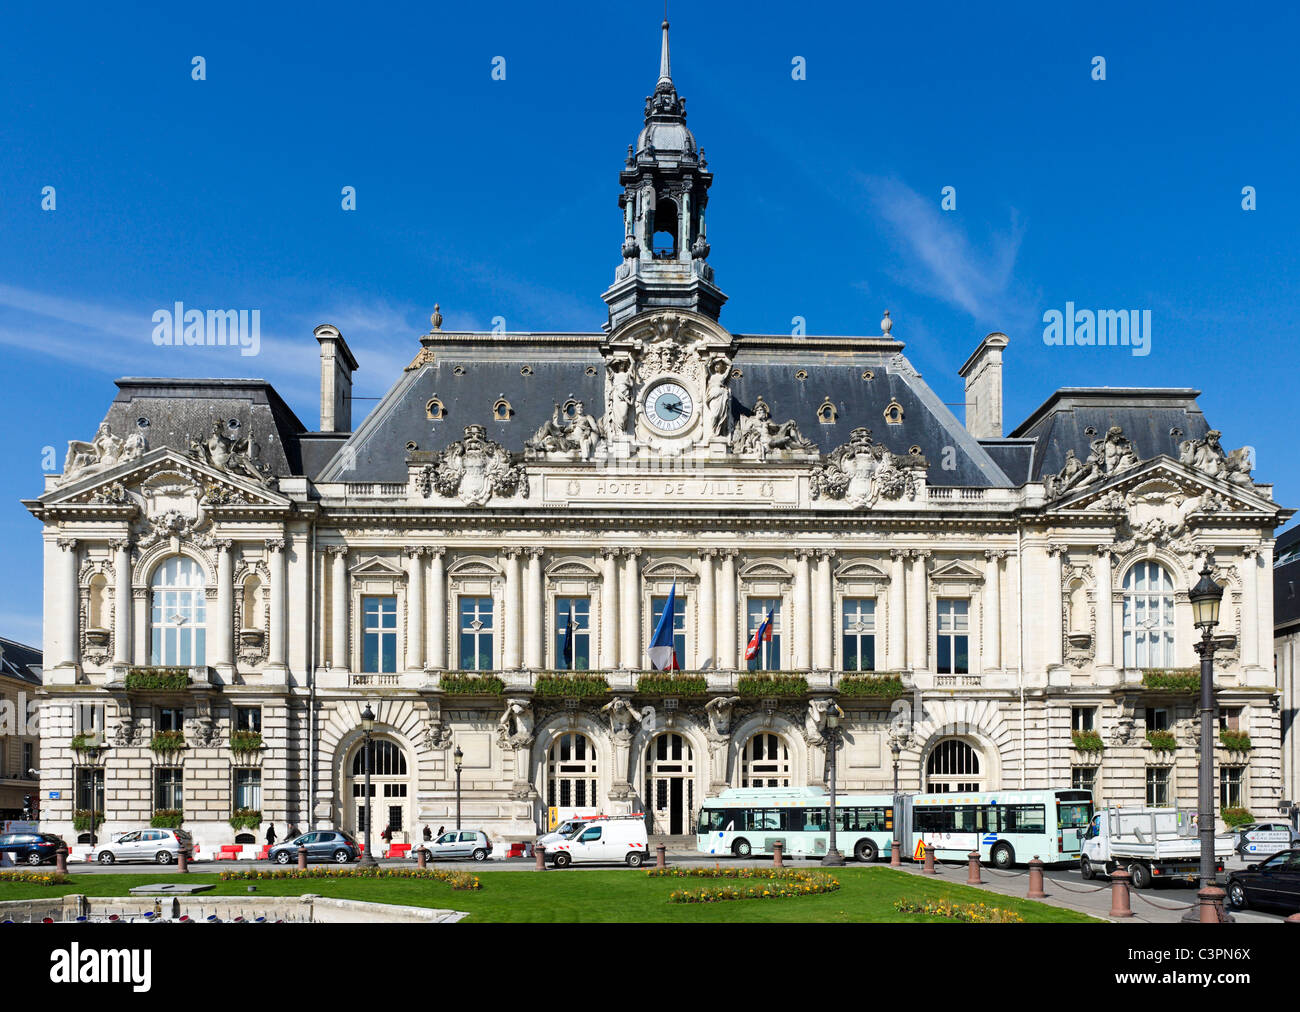 The Hotel de Ville (Town Hall), Place Jean Jaures, Tours, Indre et Loire, France Stock Photo